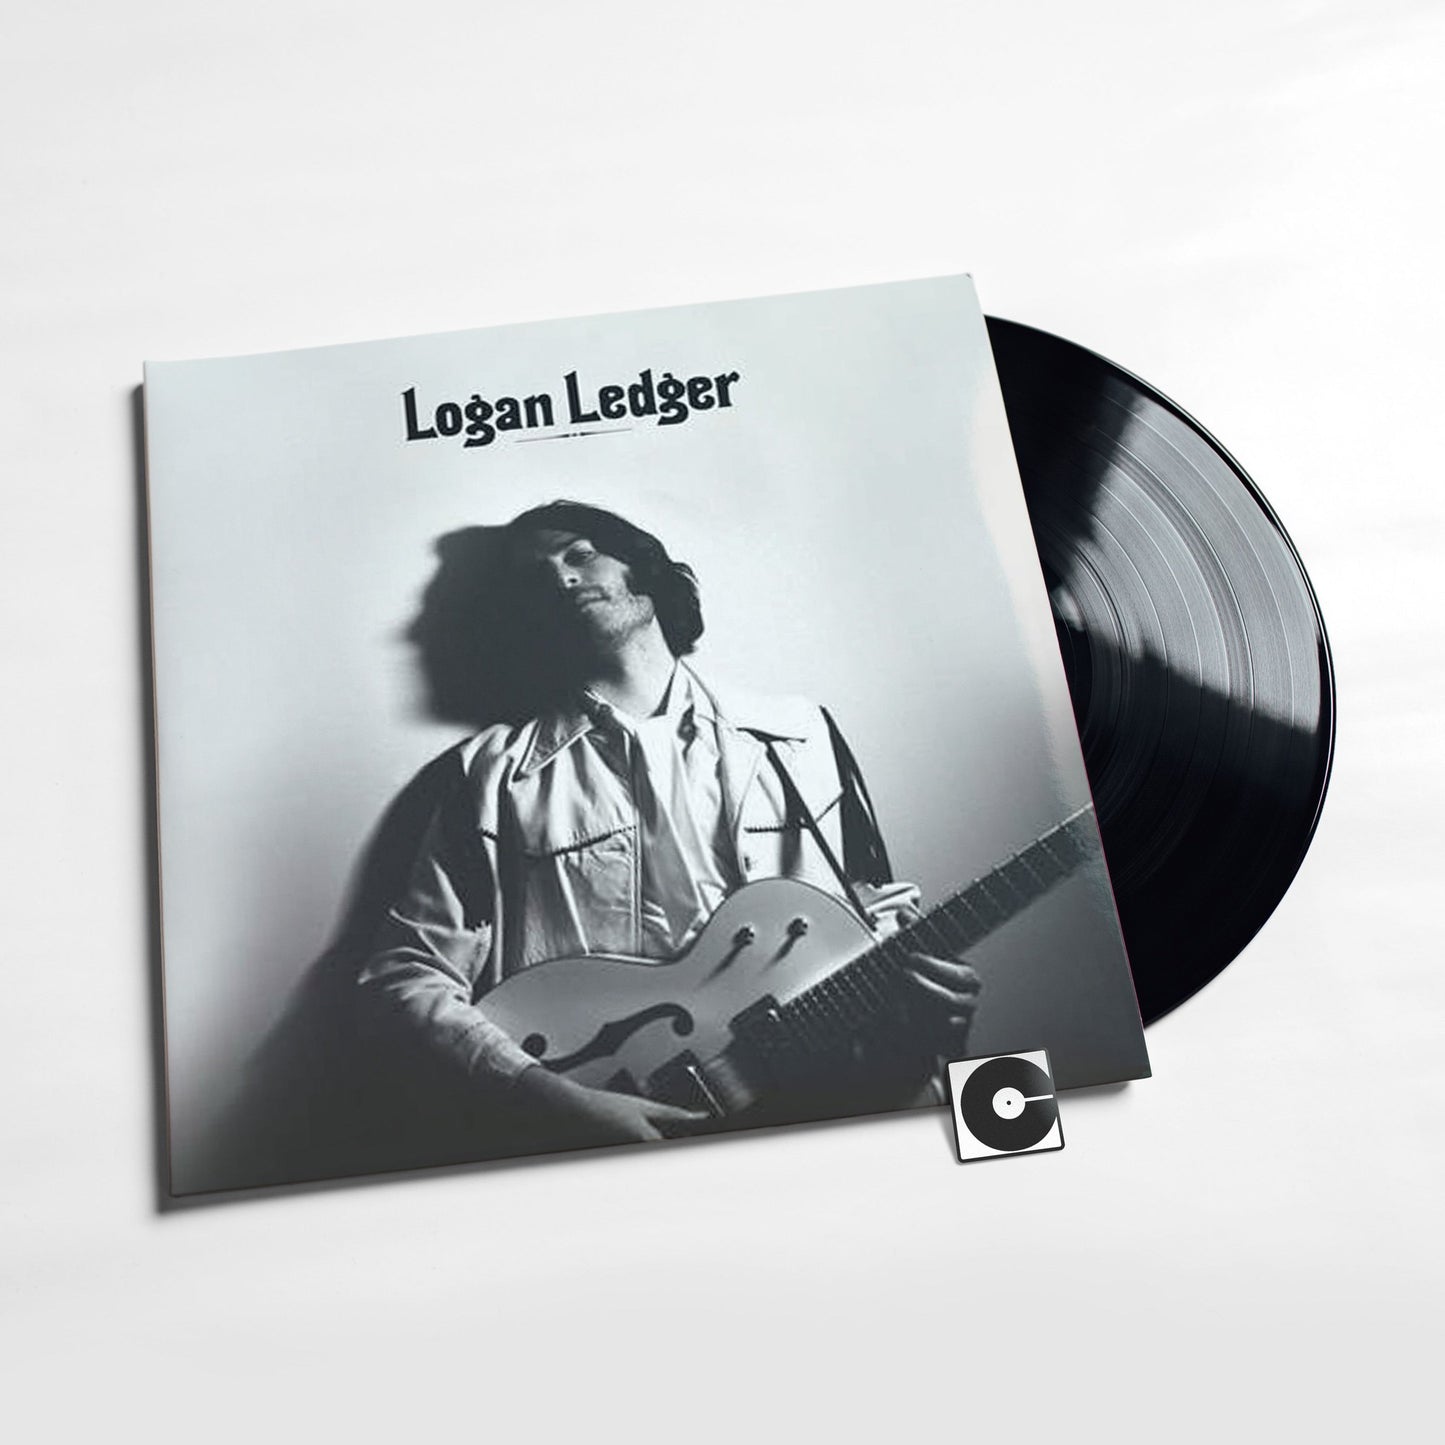 Logan Ledger - "Logan Ledger"